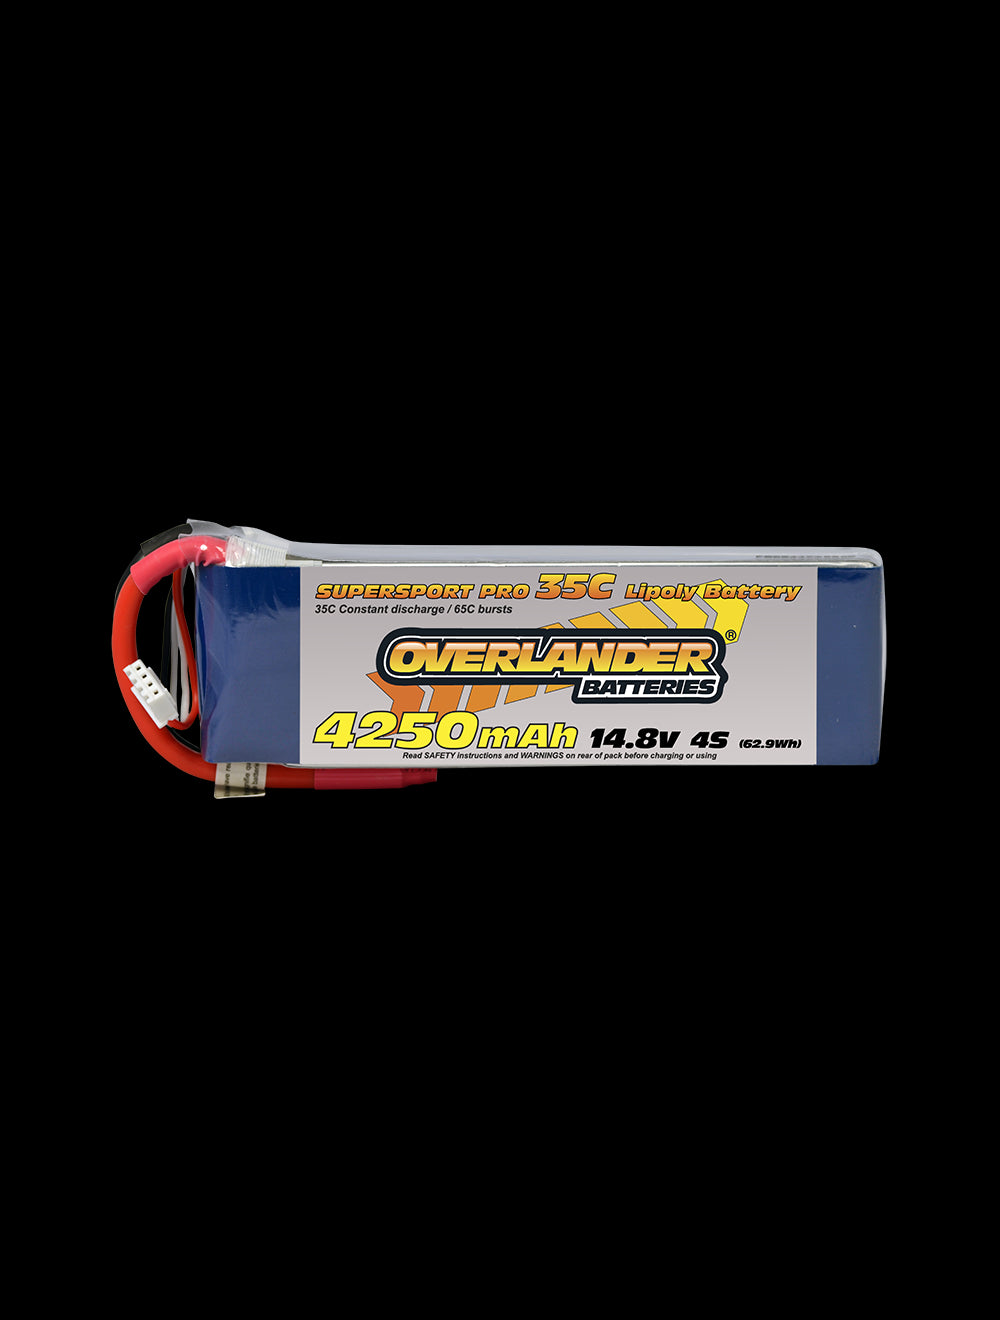 Overlander 4250mAh 14.8V 4S 35C Supersport Pro LiPo Battery - EC3 Connector 2476